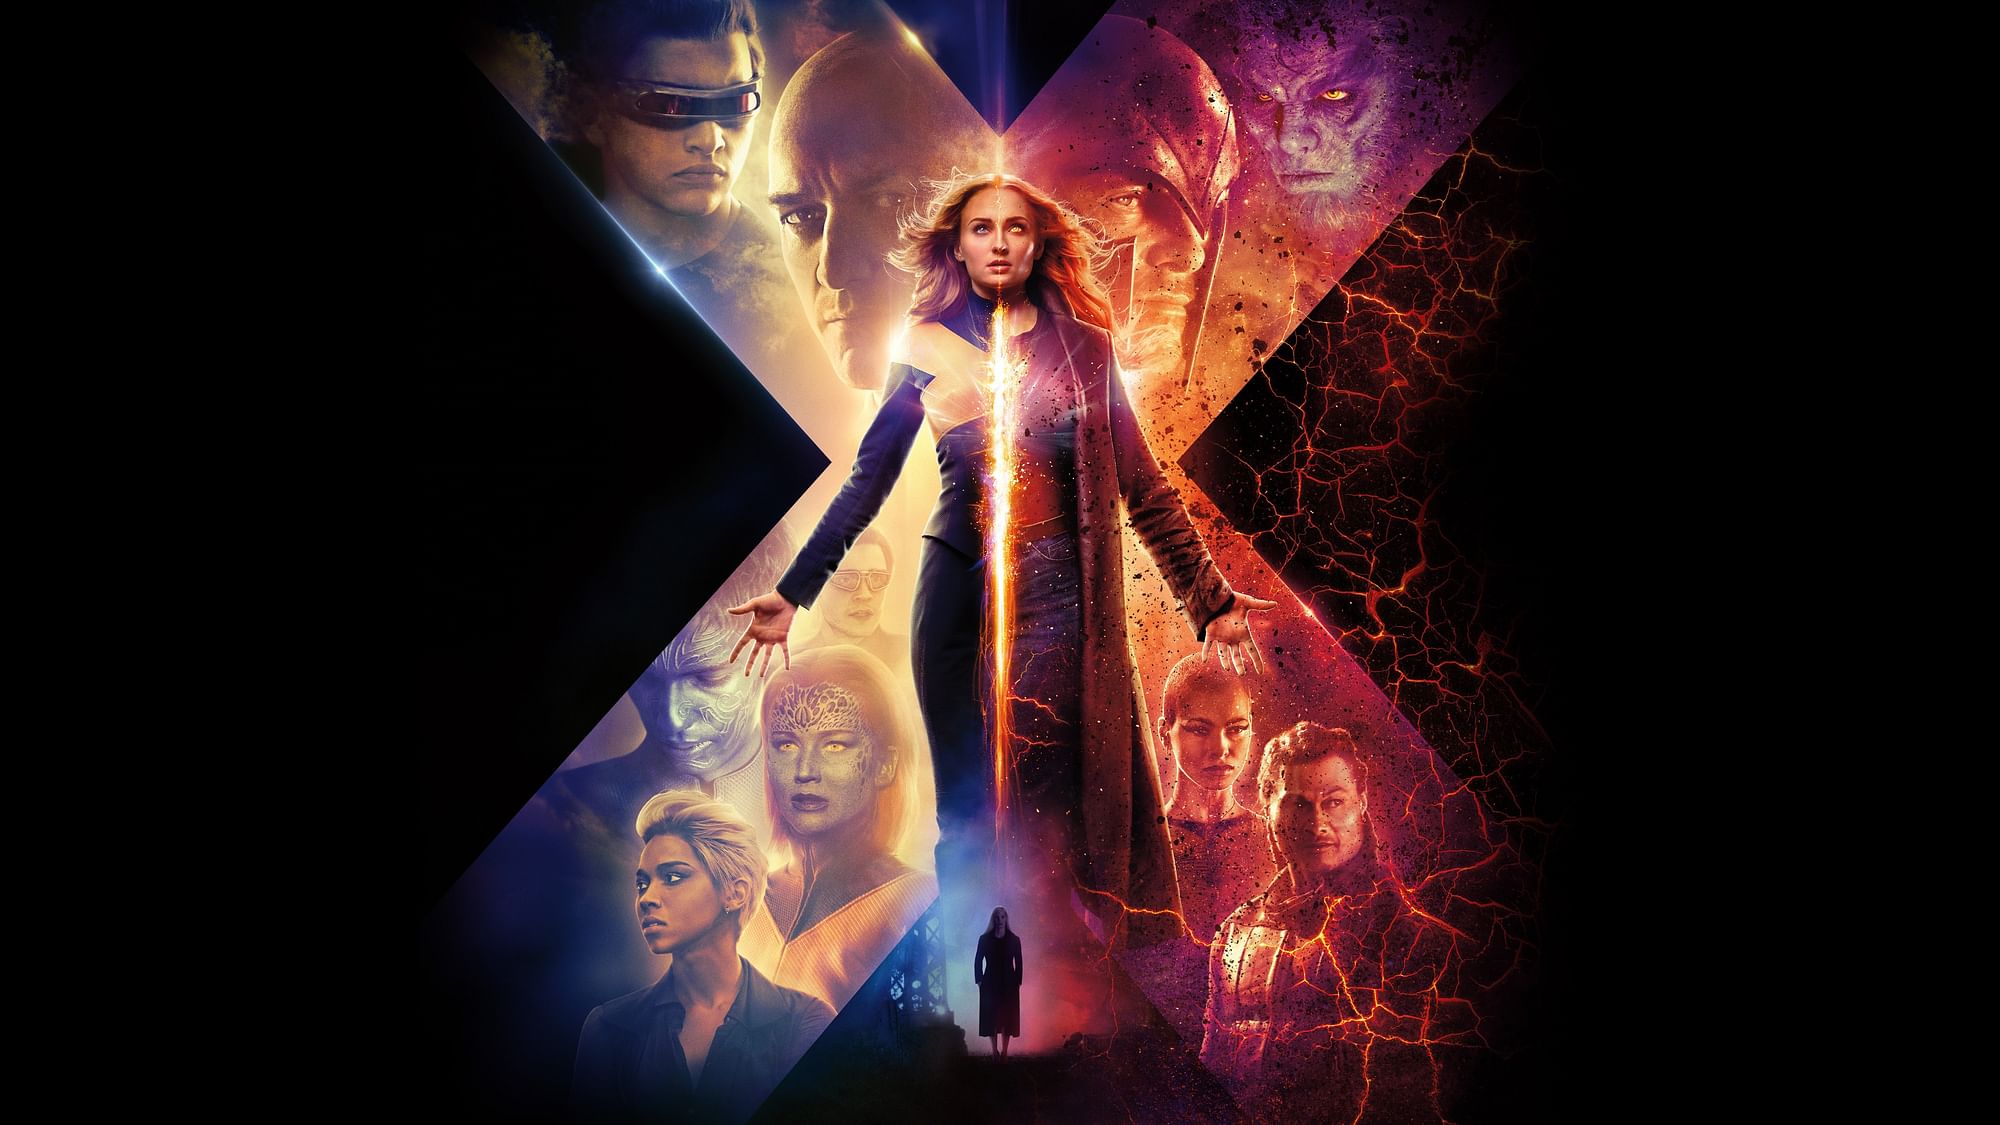 A poster of <i>X-Men: Dark Phoenix</i>.